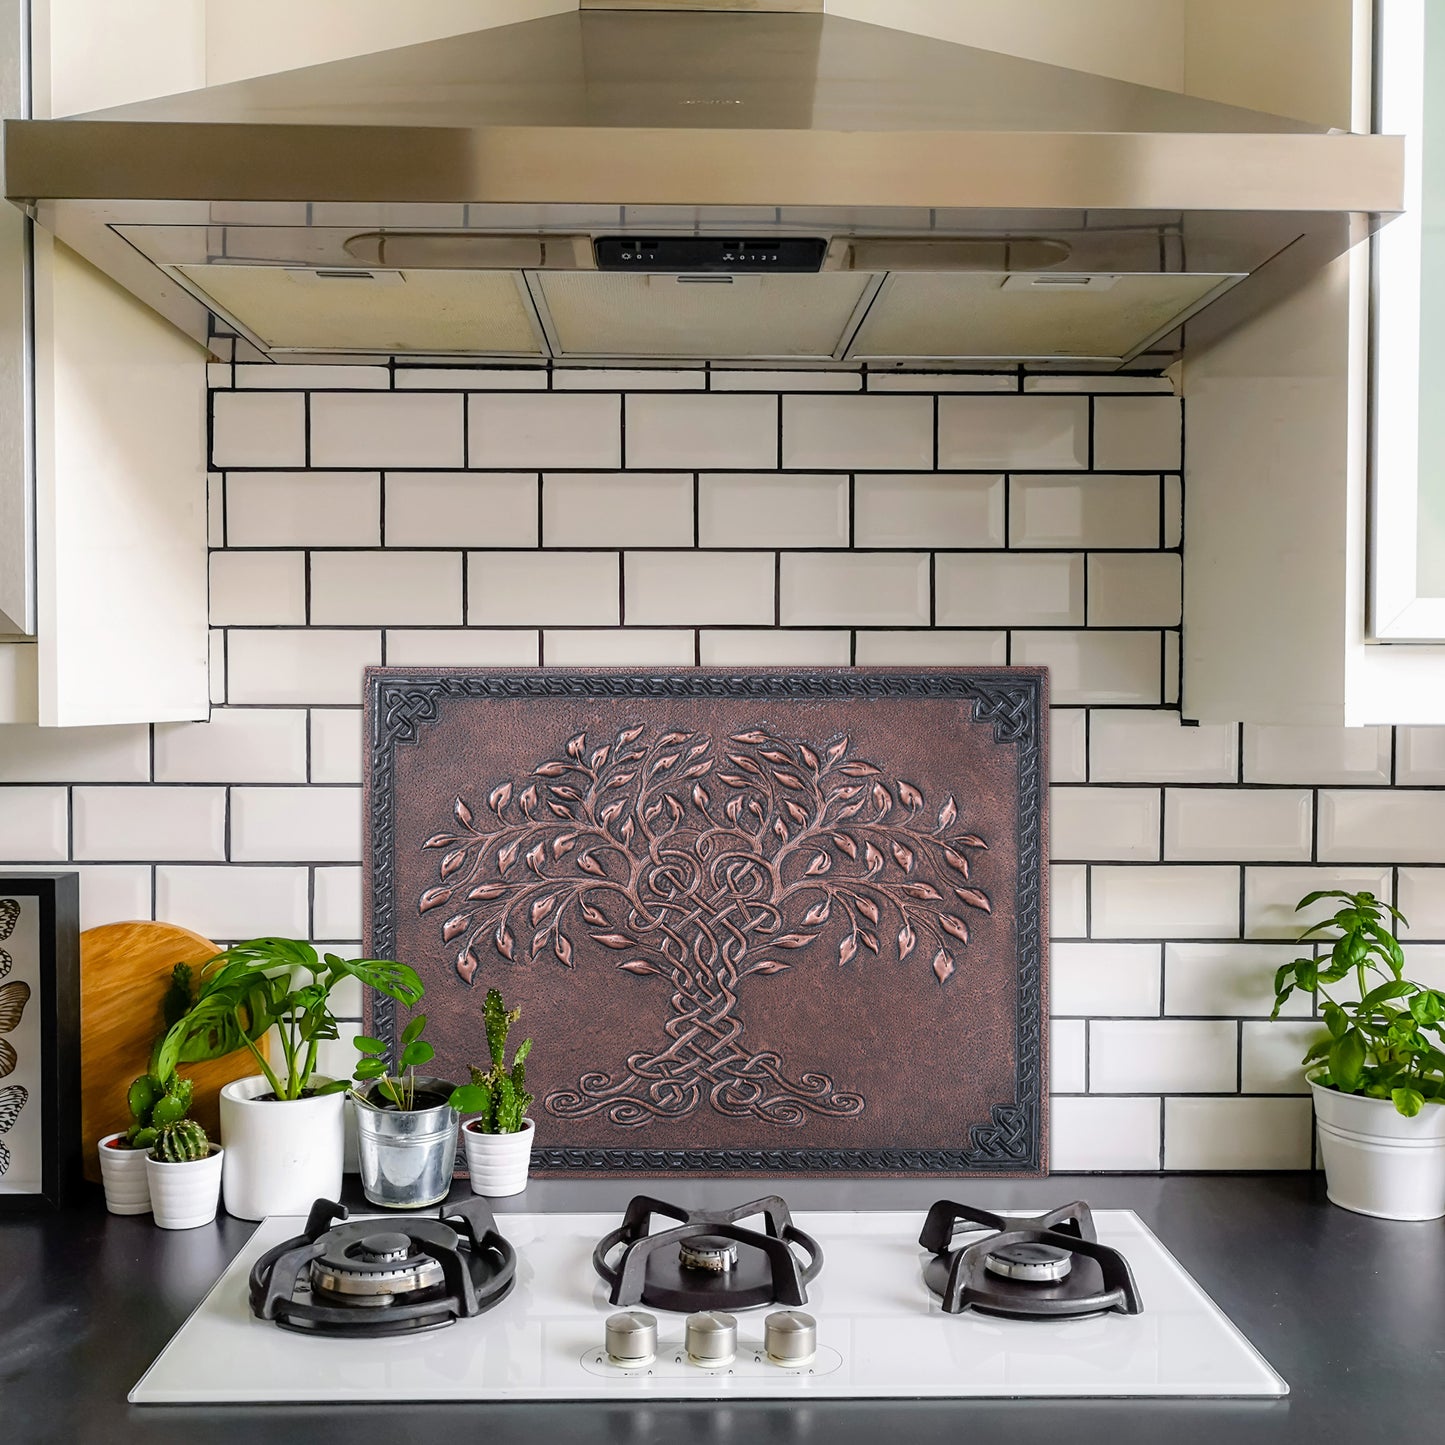 Celtic Tree of Life Kitchen Backsplash Tile - 18"x24" Brown